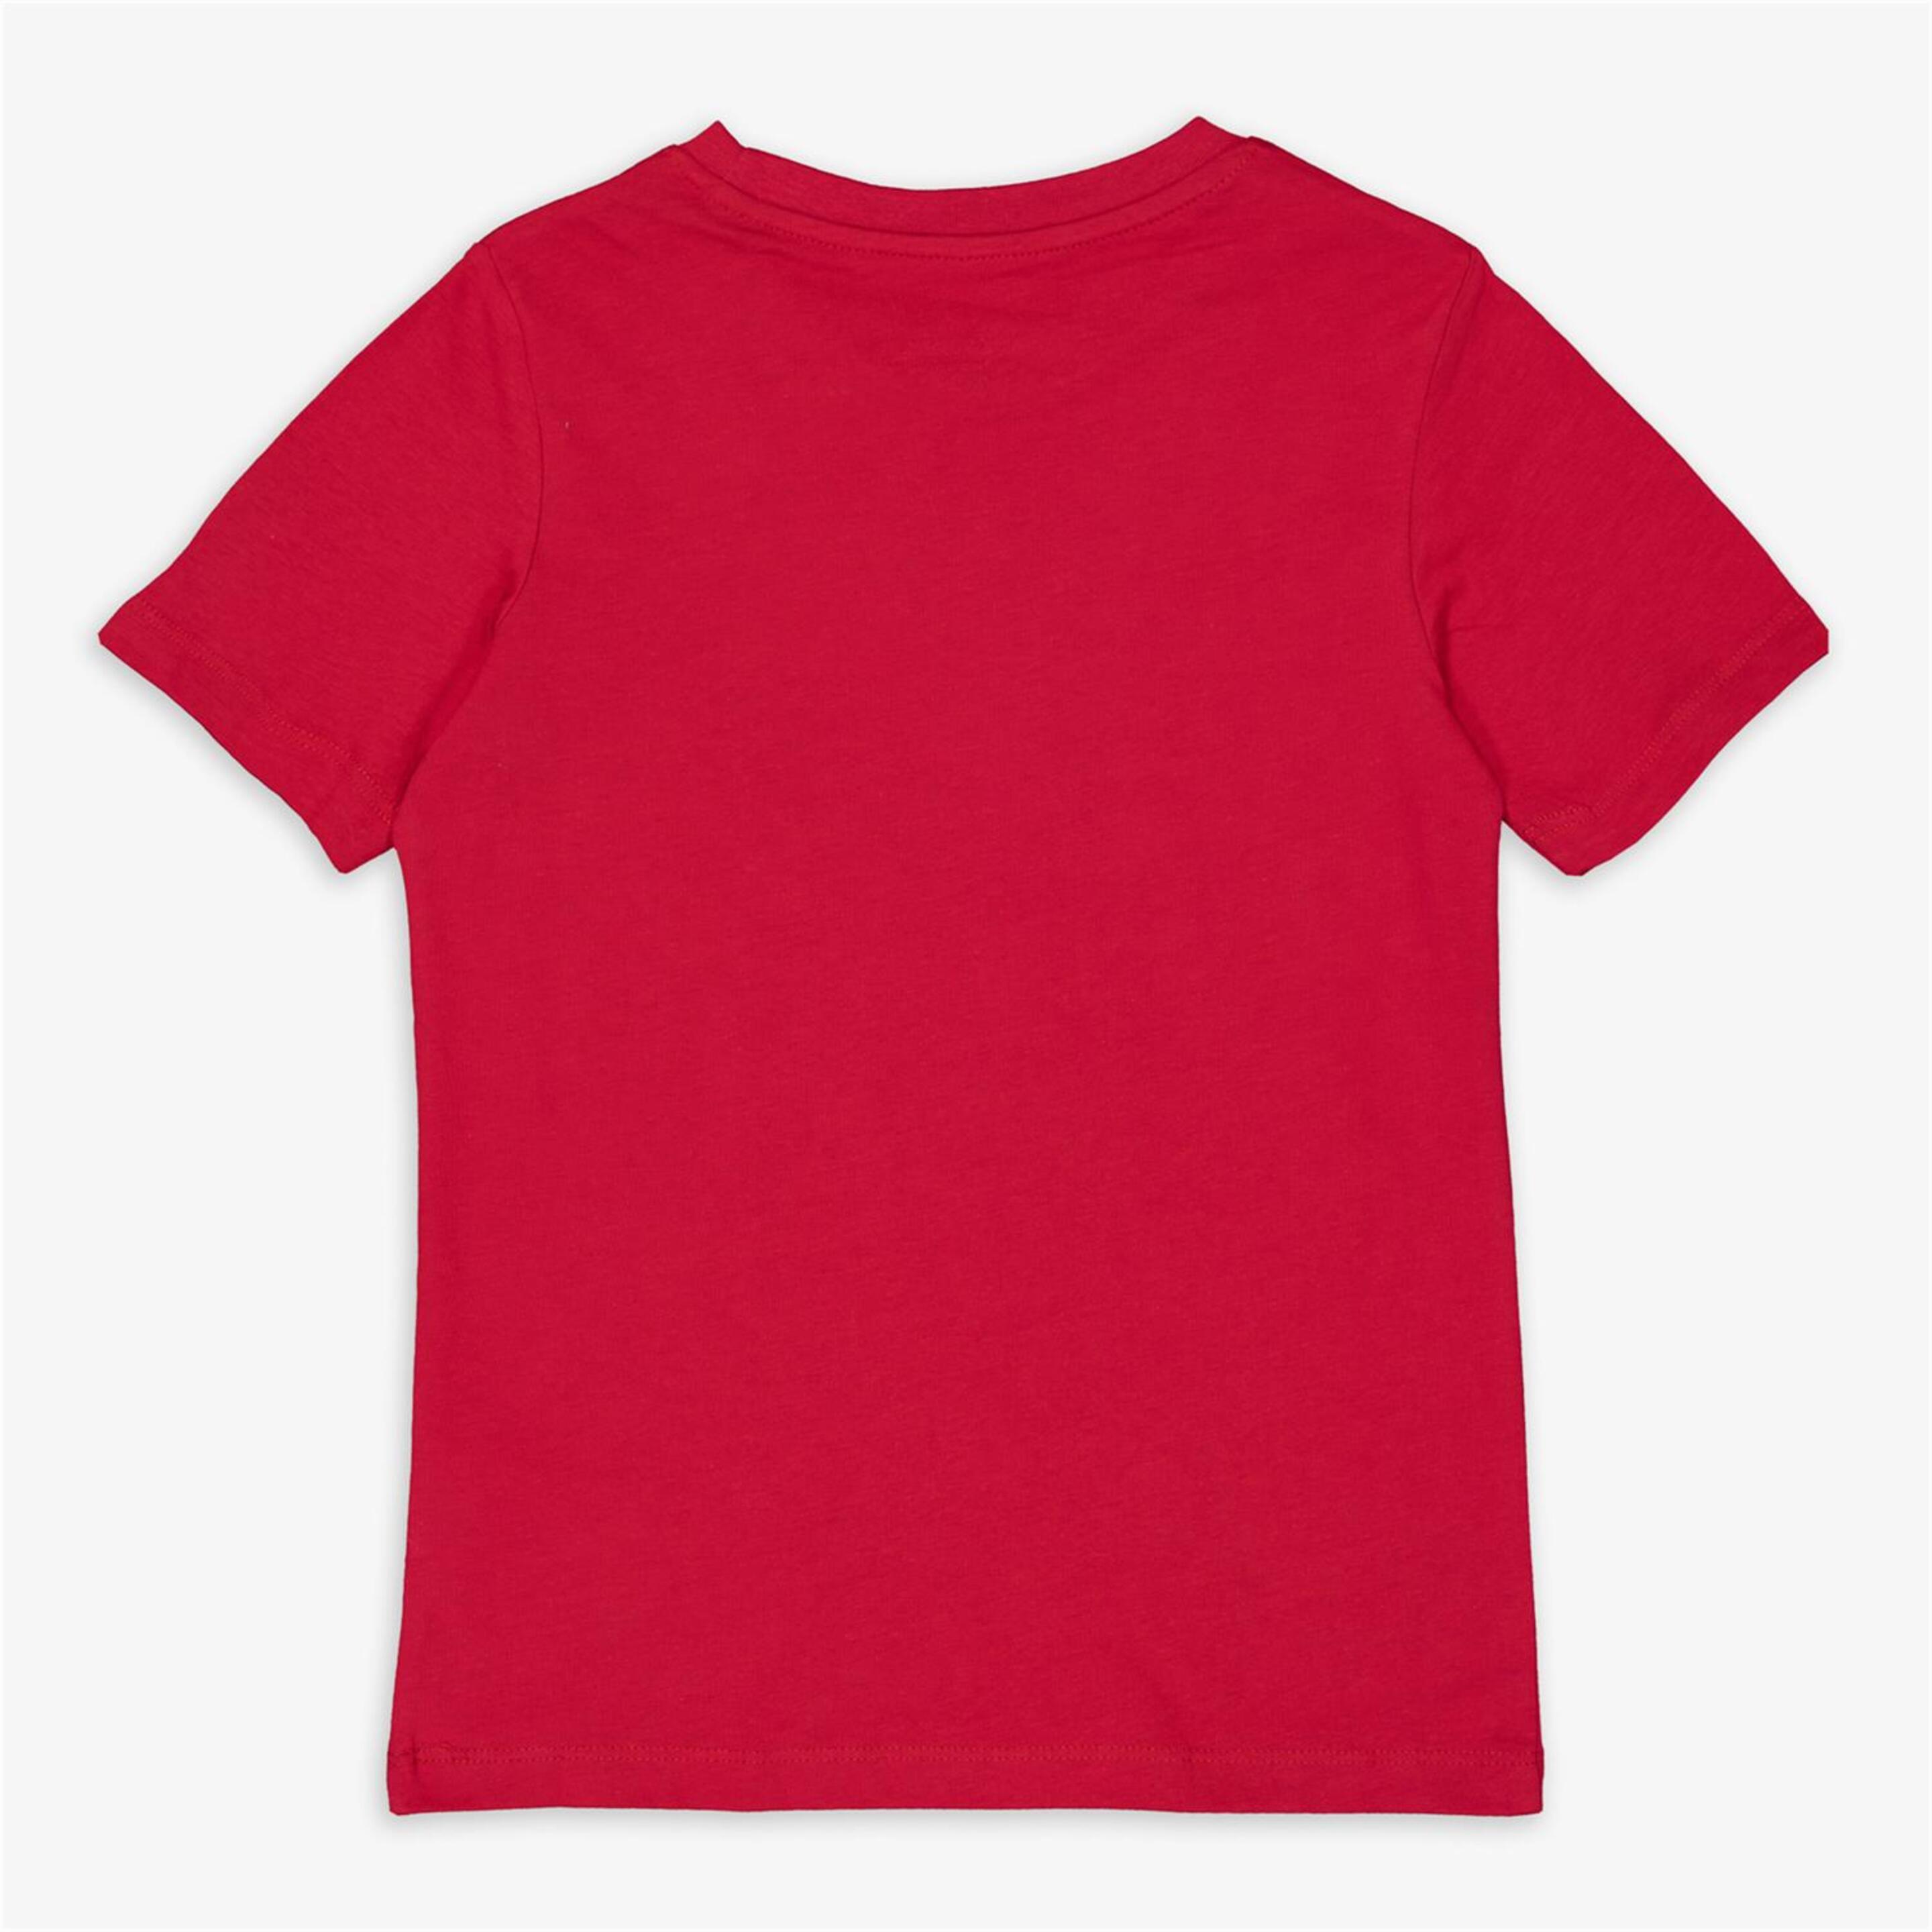 Jack & Jones - Rojo - Camiseta Niño